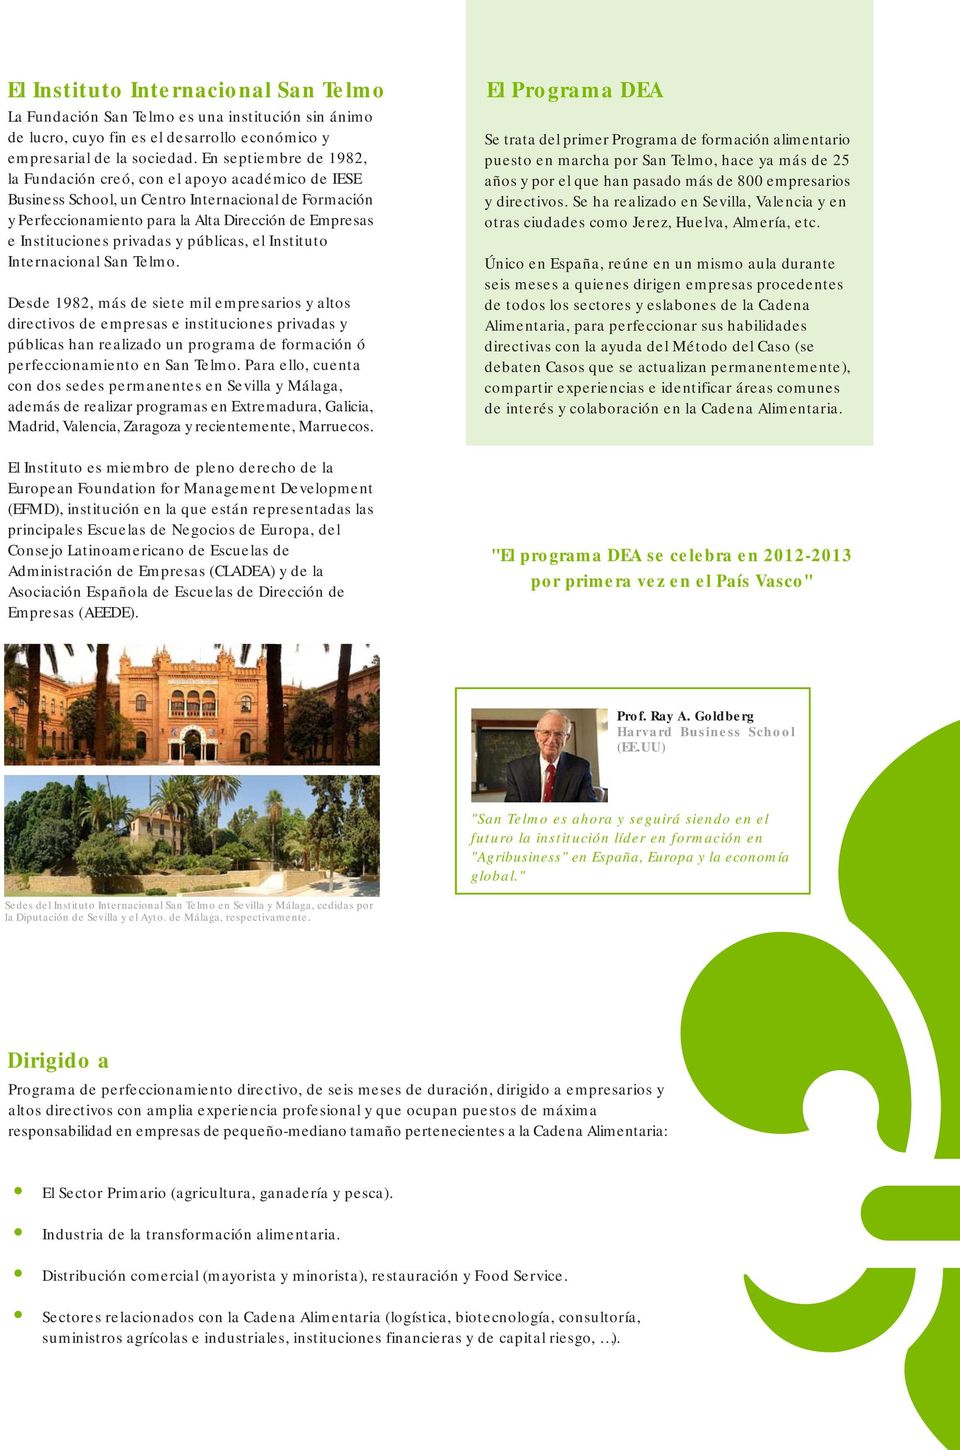 privadas y públicas, el Instituto Internacional San Telmo.